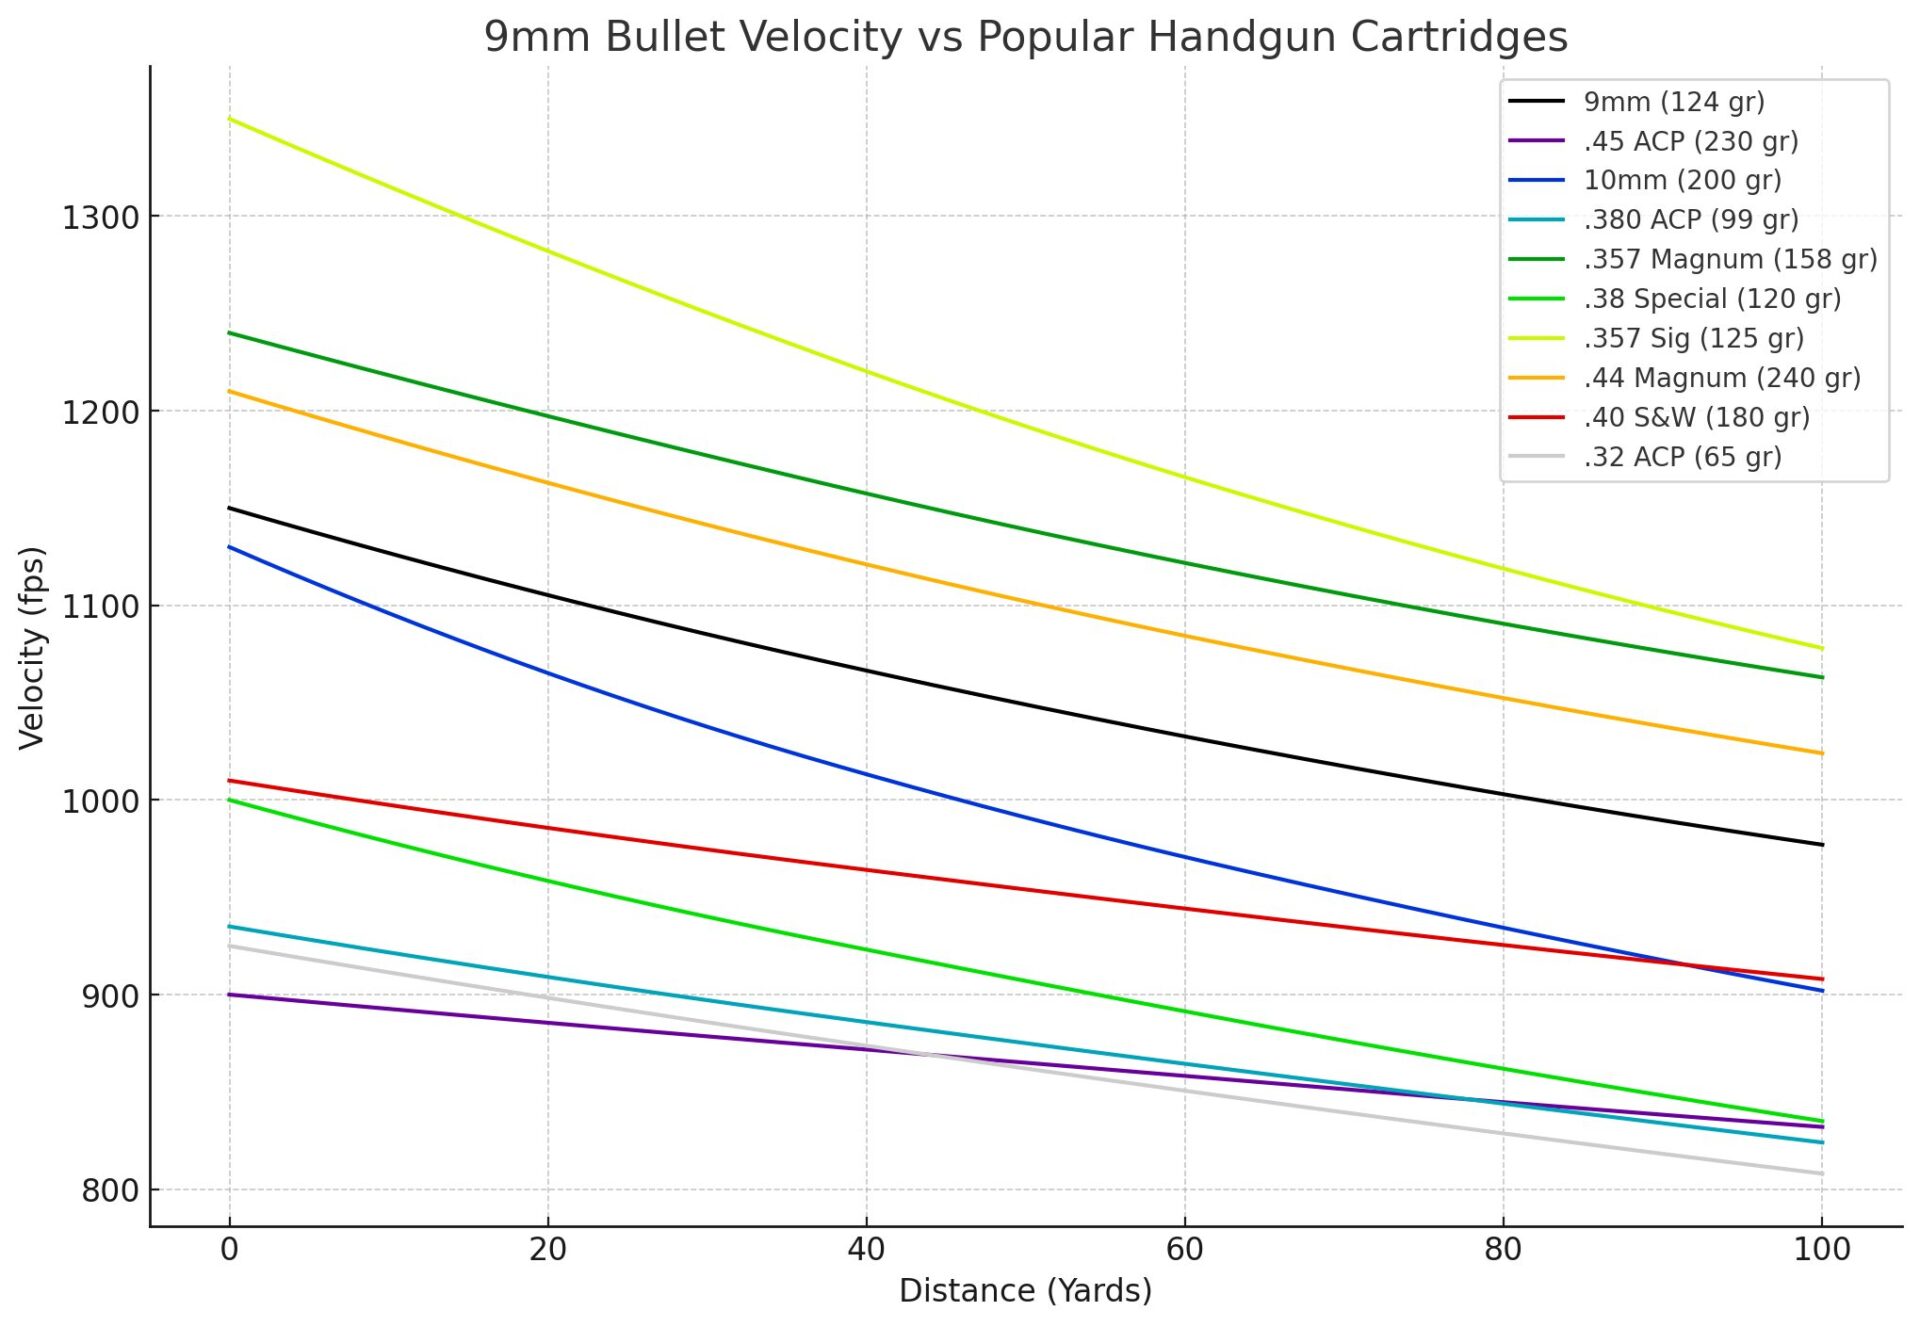 9mm Bullet Velocity vs Popular Cartridges Comparison Graph